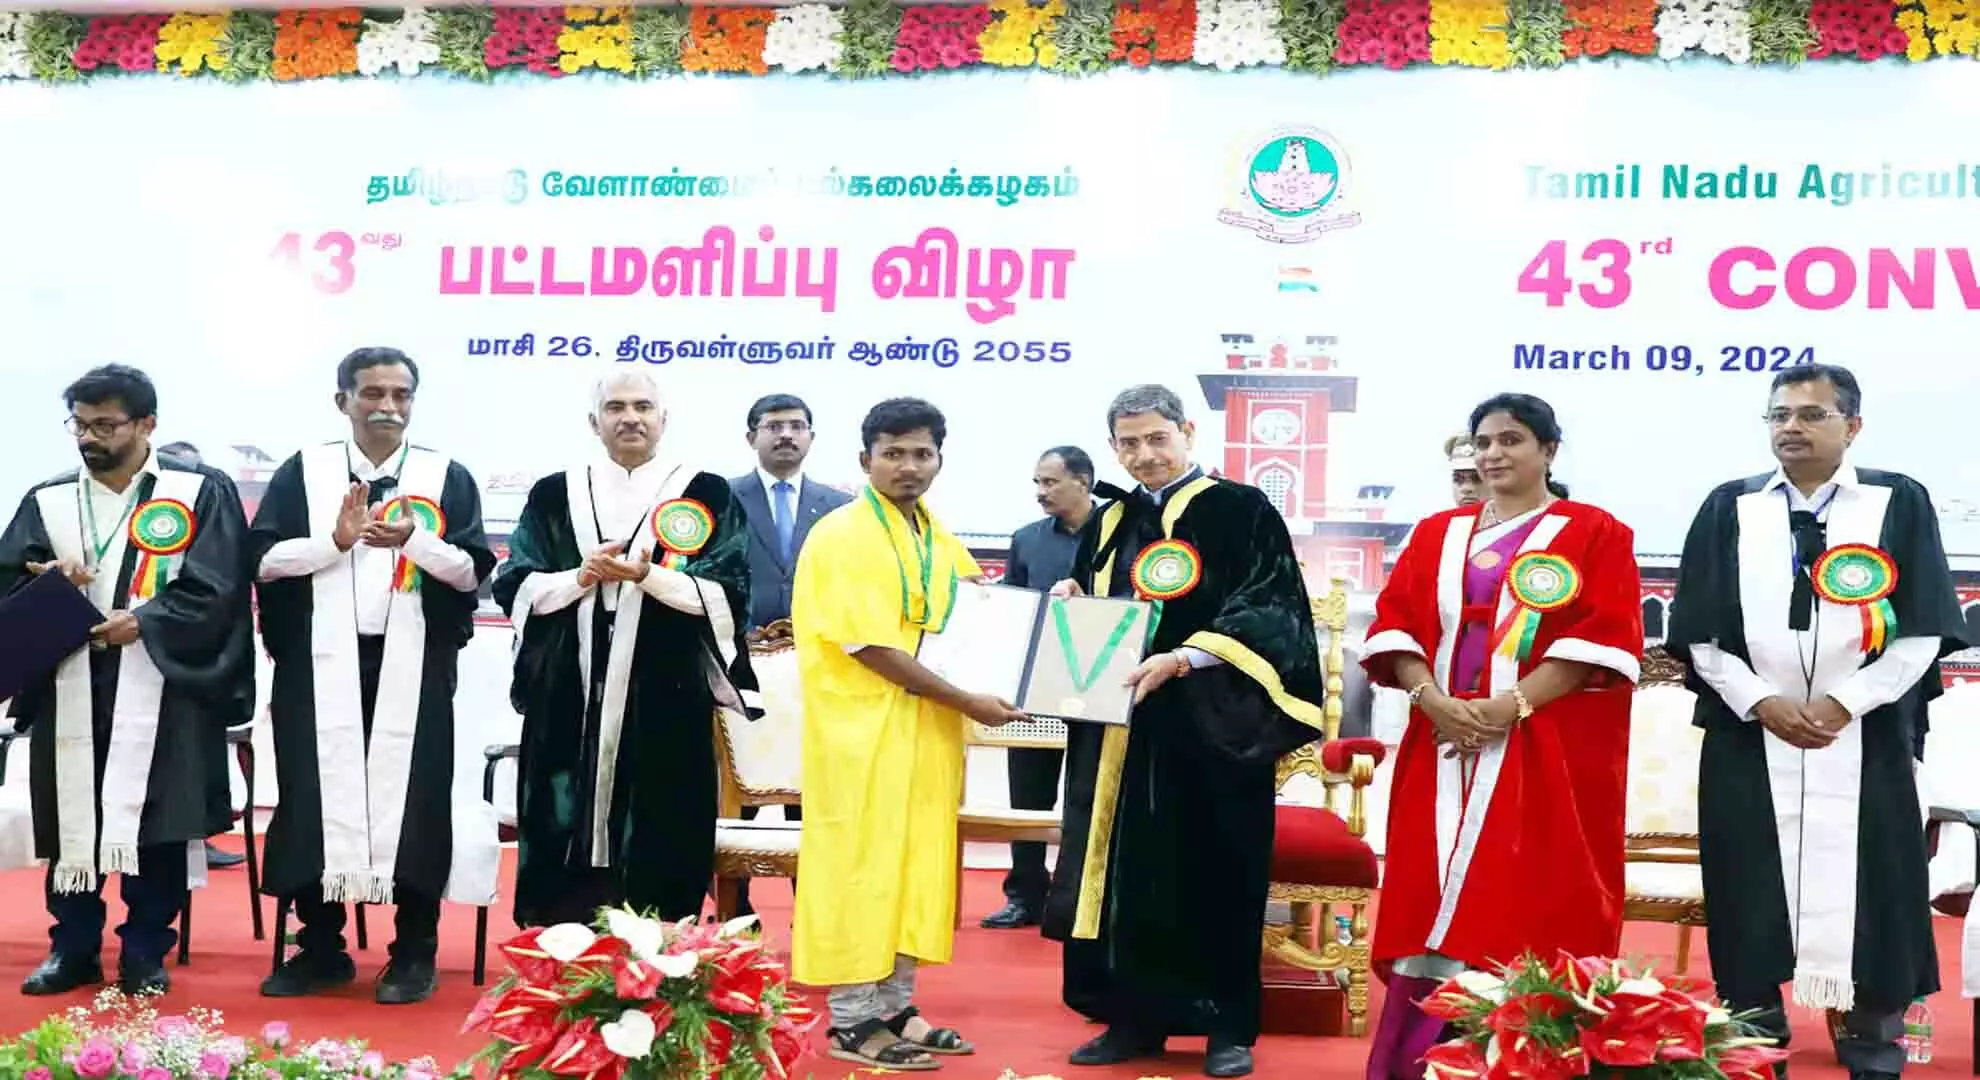 तमिलनाडु कृषि विश्वविद्यालय के स्नातकों ने क्षेत्र को बदलने के लिए तकनीक का उपयोग करने का आग्रह किया